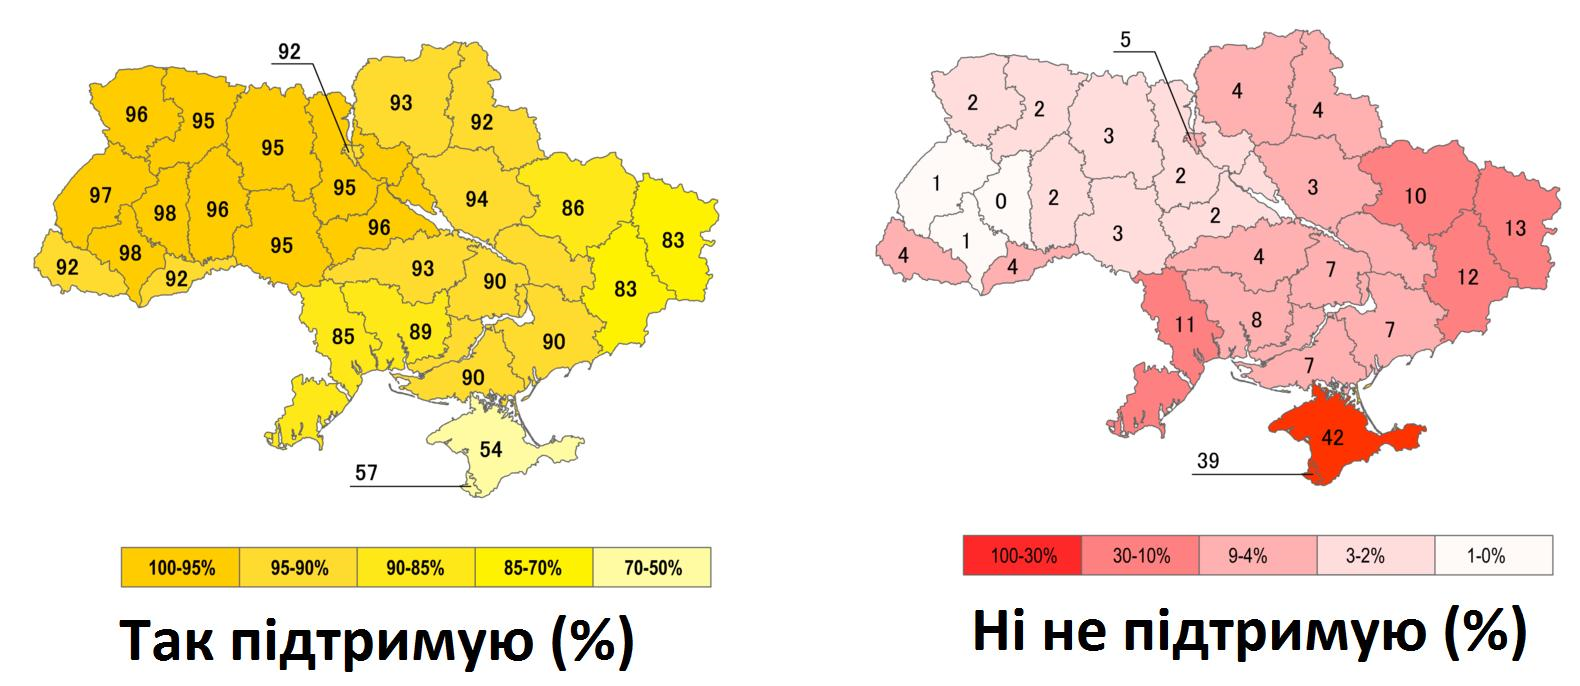 Границы украины 91 года на карте. Карта Украины референдум 1991. Всеукраинский референдум (1991)независимость Украины. Карта Украины 1991 года. Карта референдума 1991 года на Украине.